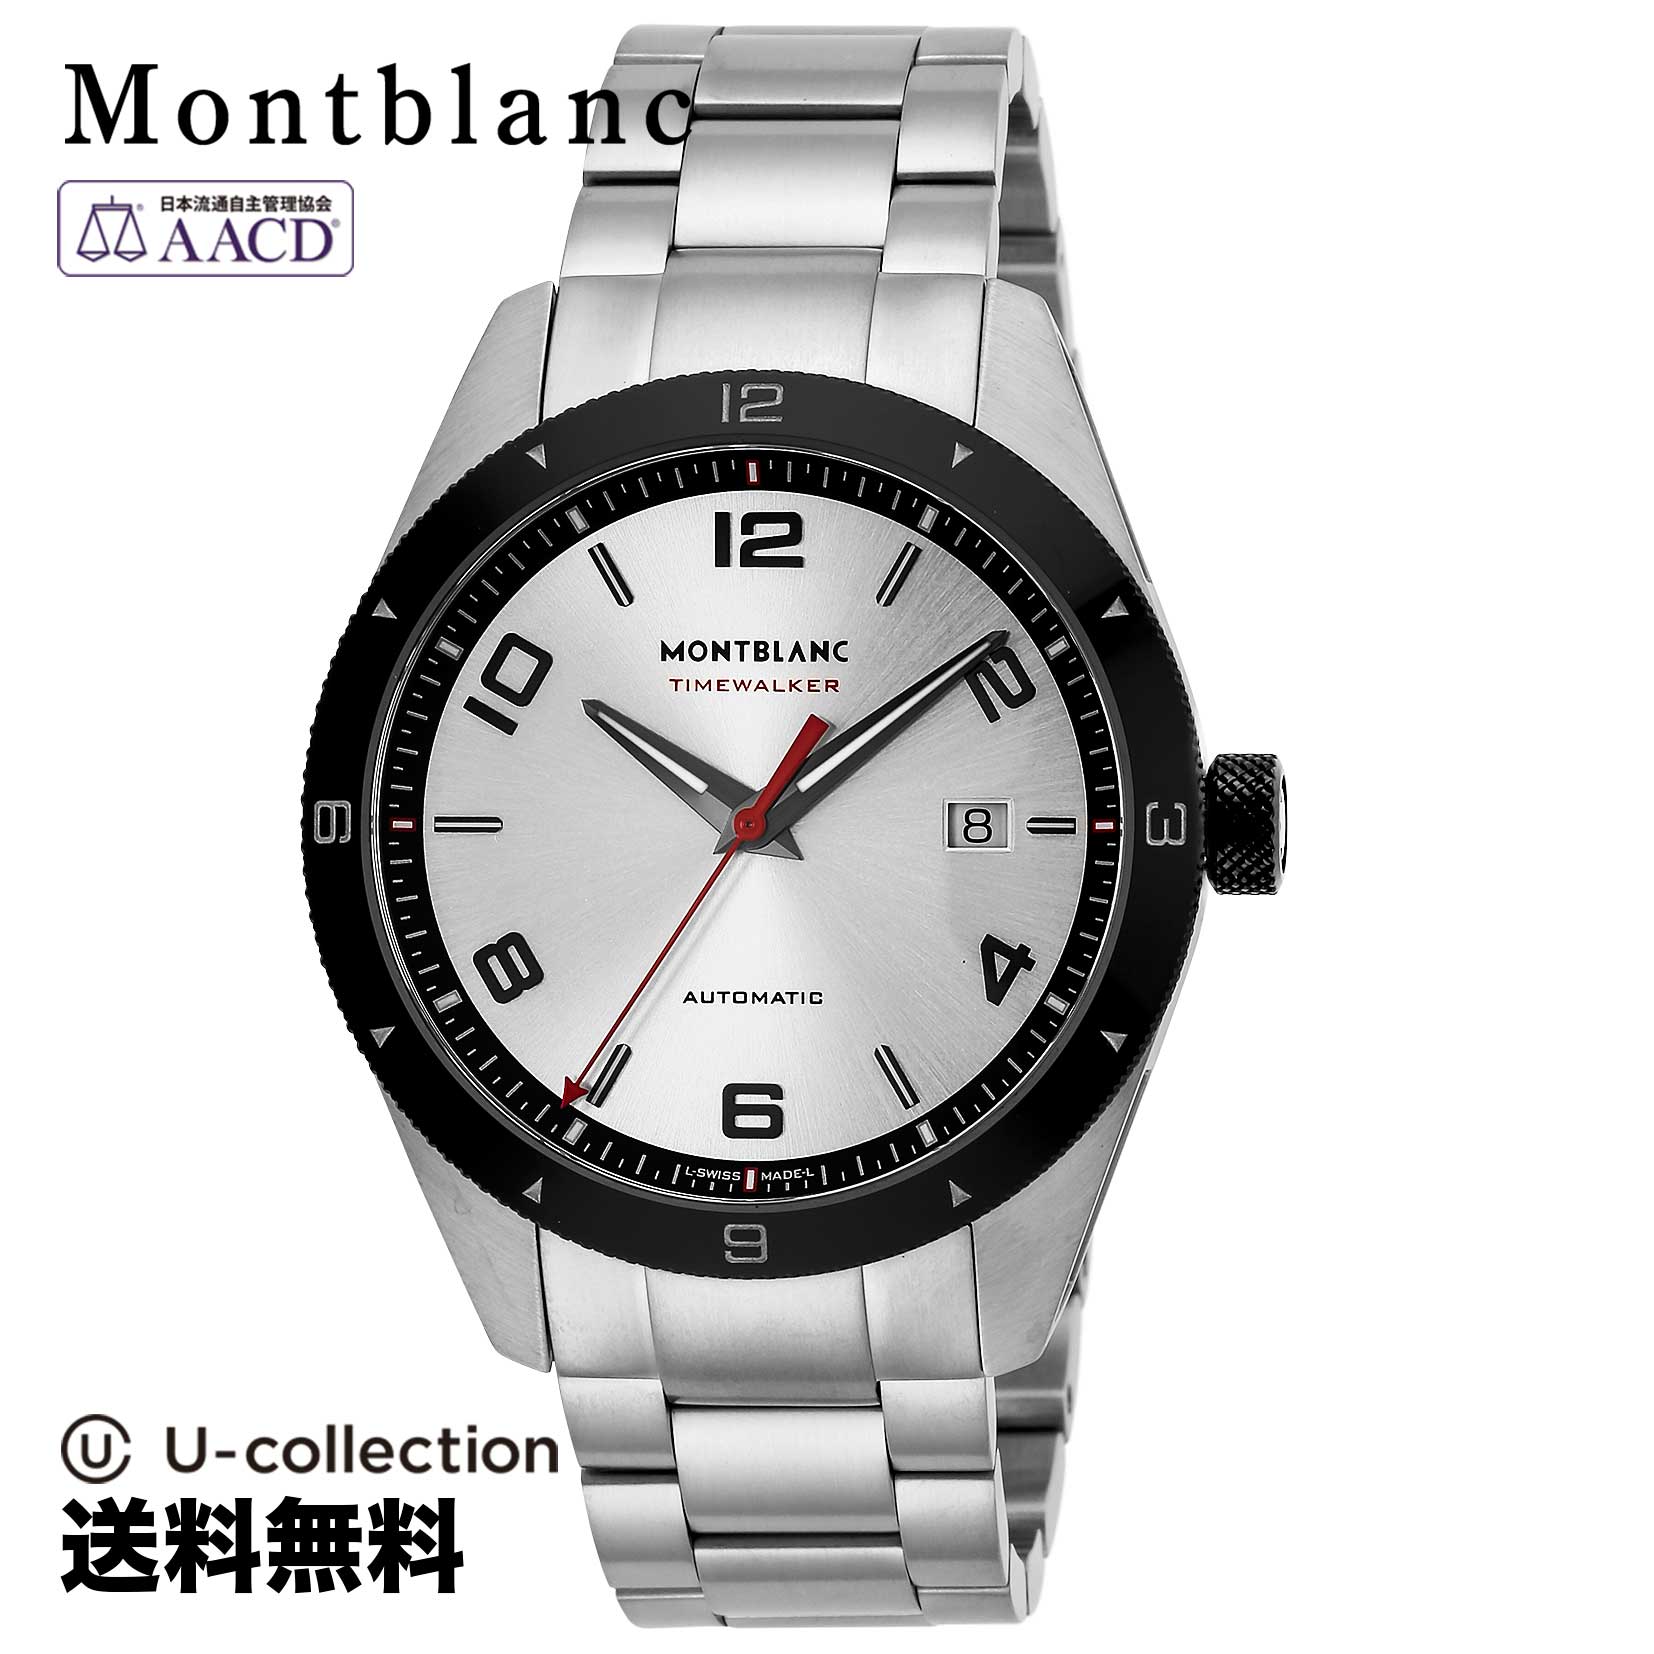 Mont Blanc【腕時計】 Montblanc(モンブラン) TIME WALKER / タイムウォーカー メンズ シルバー 自動巻 116057 時計 ブランド